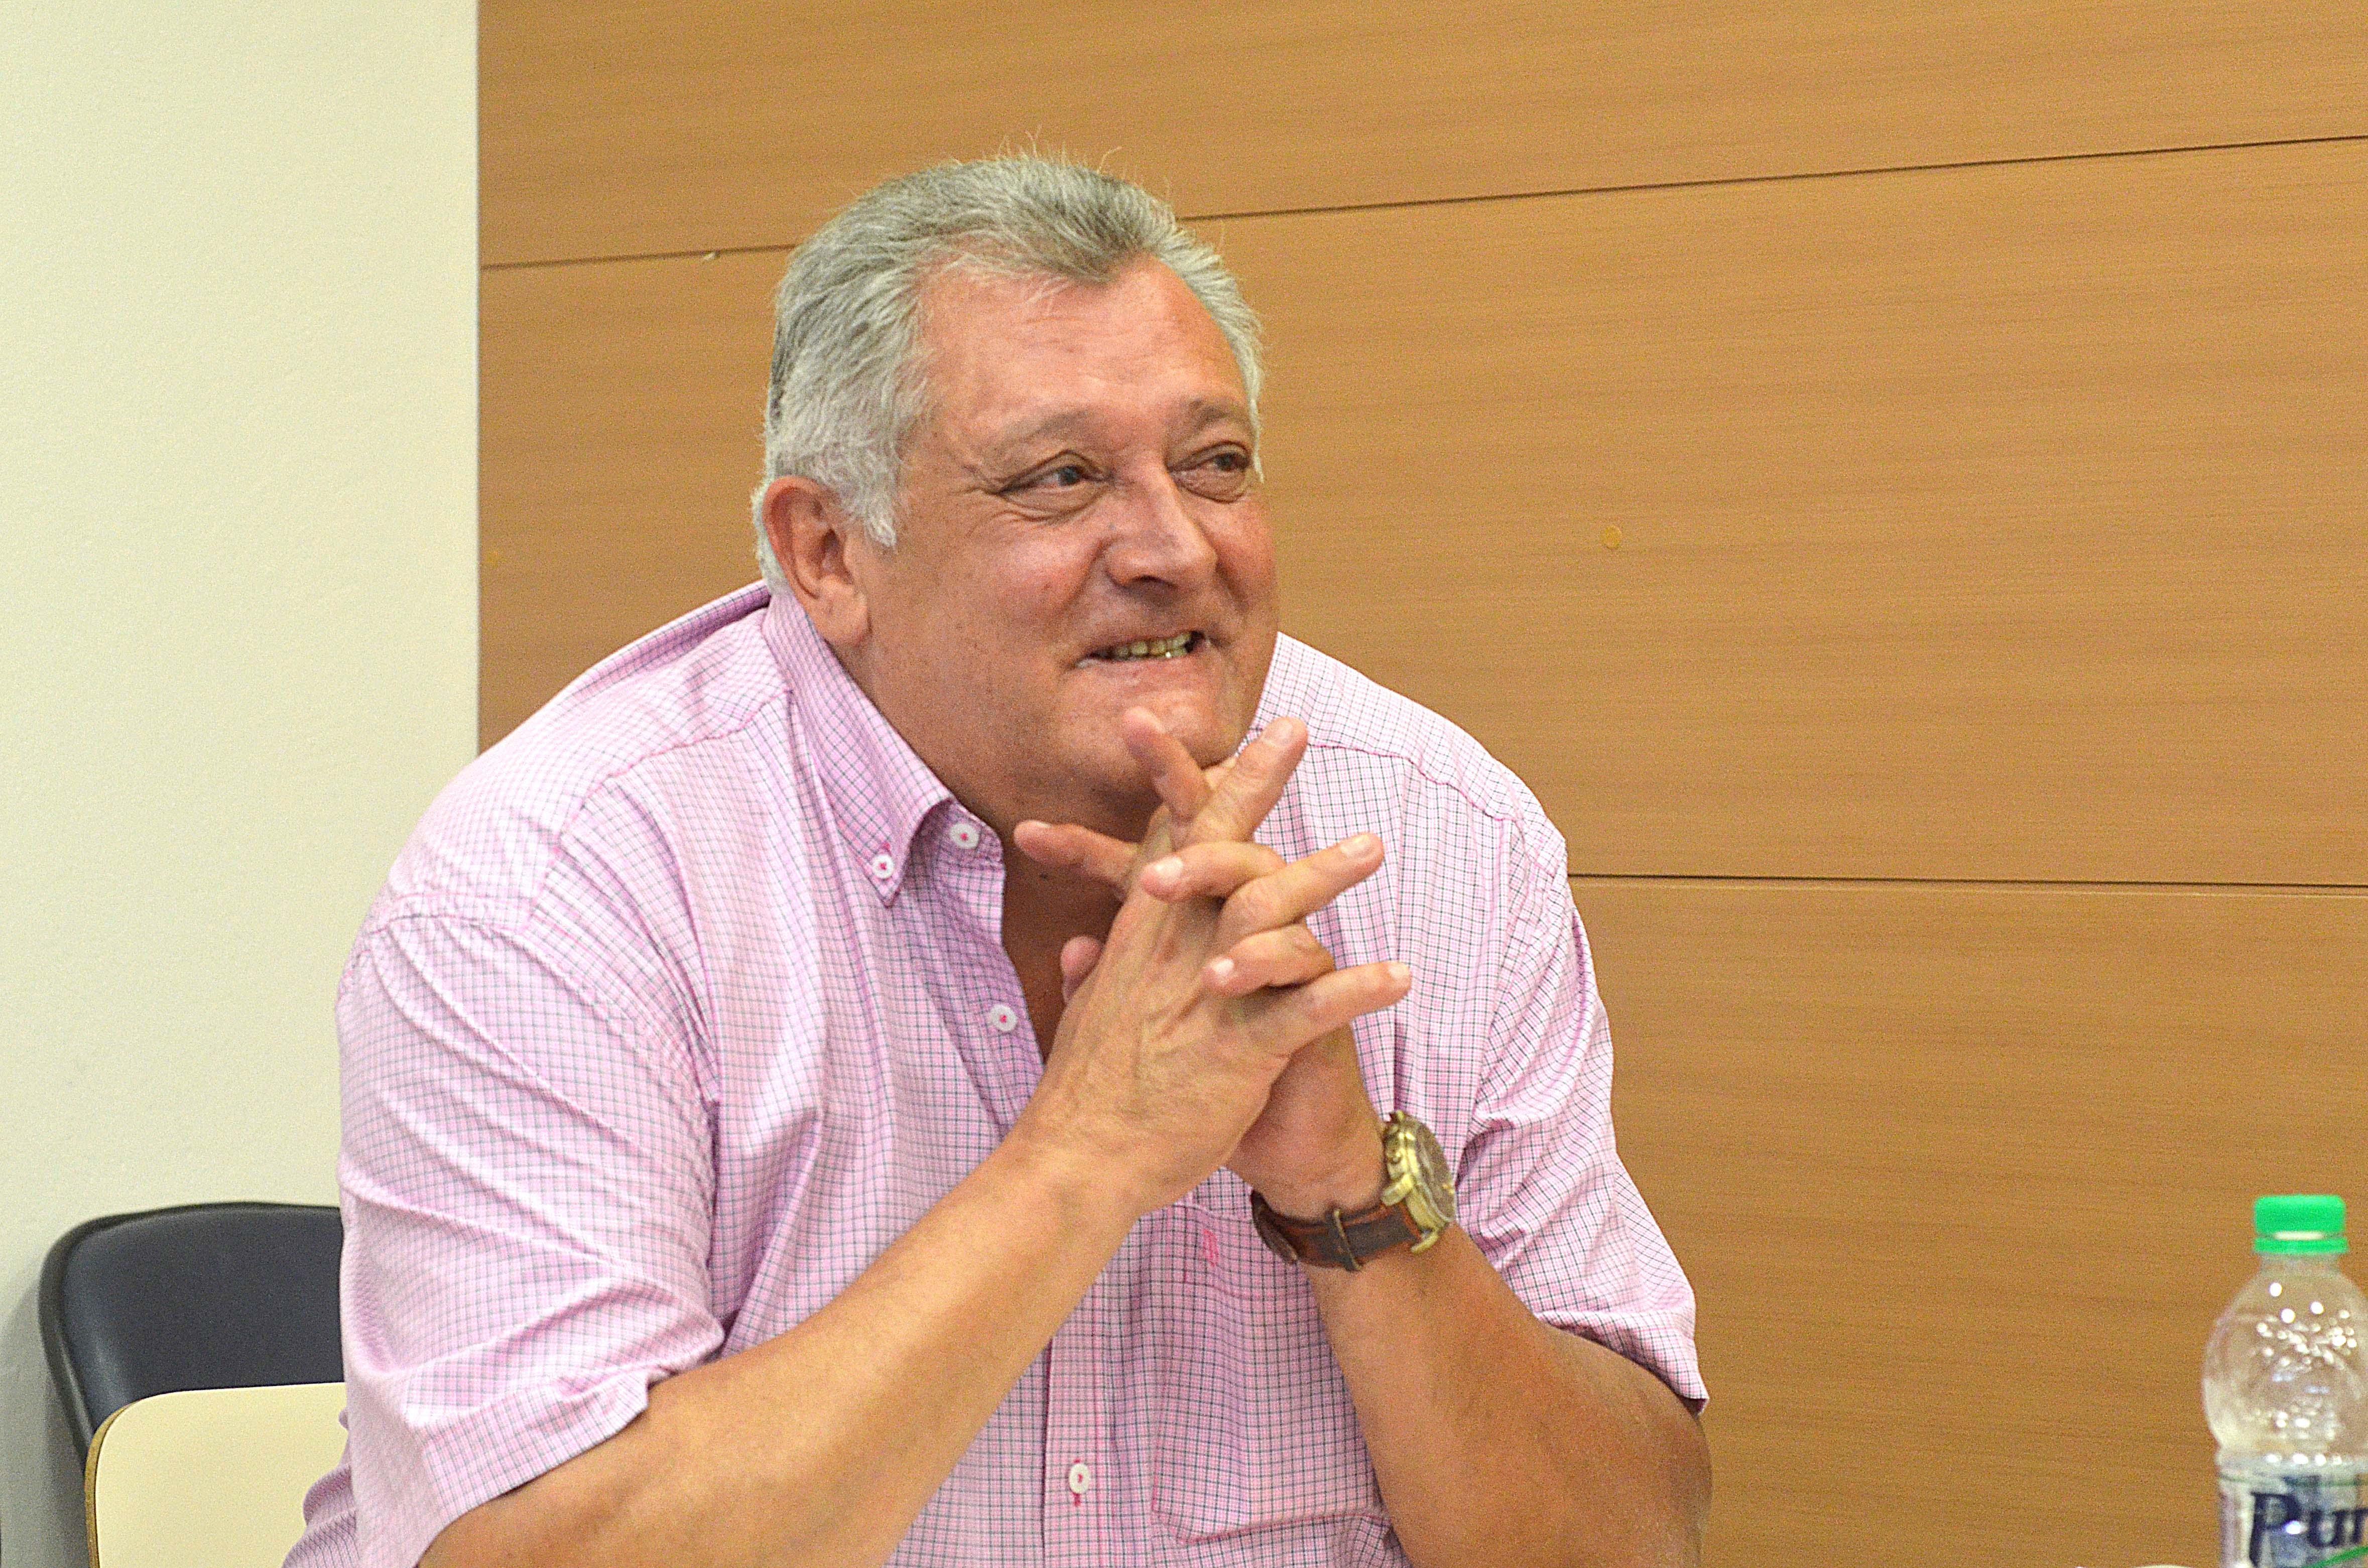 Carlos José Espíndola